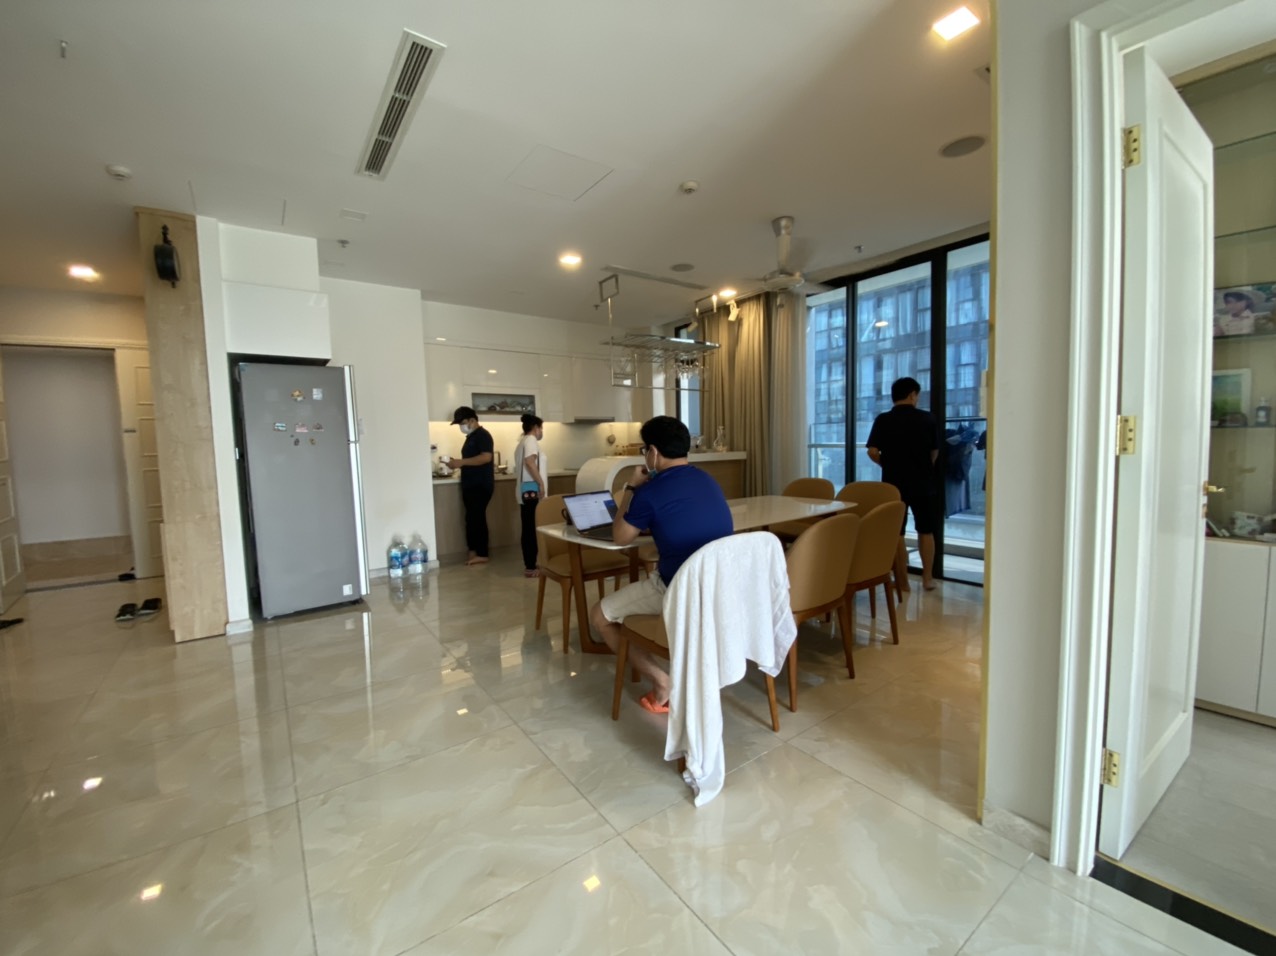 Vinhomes Golden River - Cho thuê căn hộ với đội ngũ nhân viên chuyên nghiệp và tận tâm, đảm bảo sự hài lòng của khách hàng